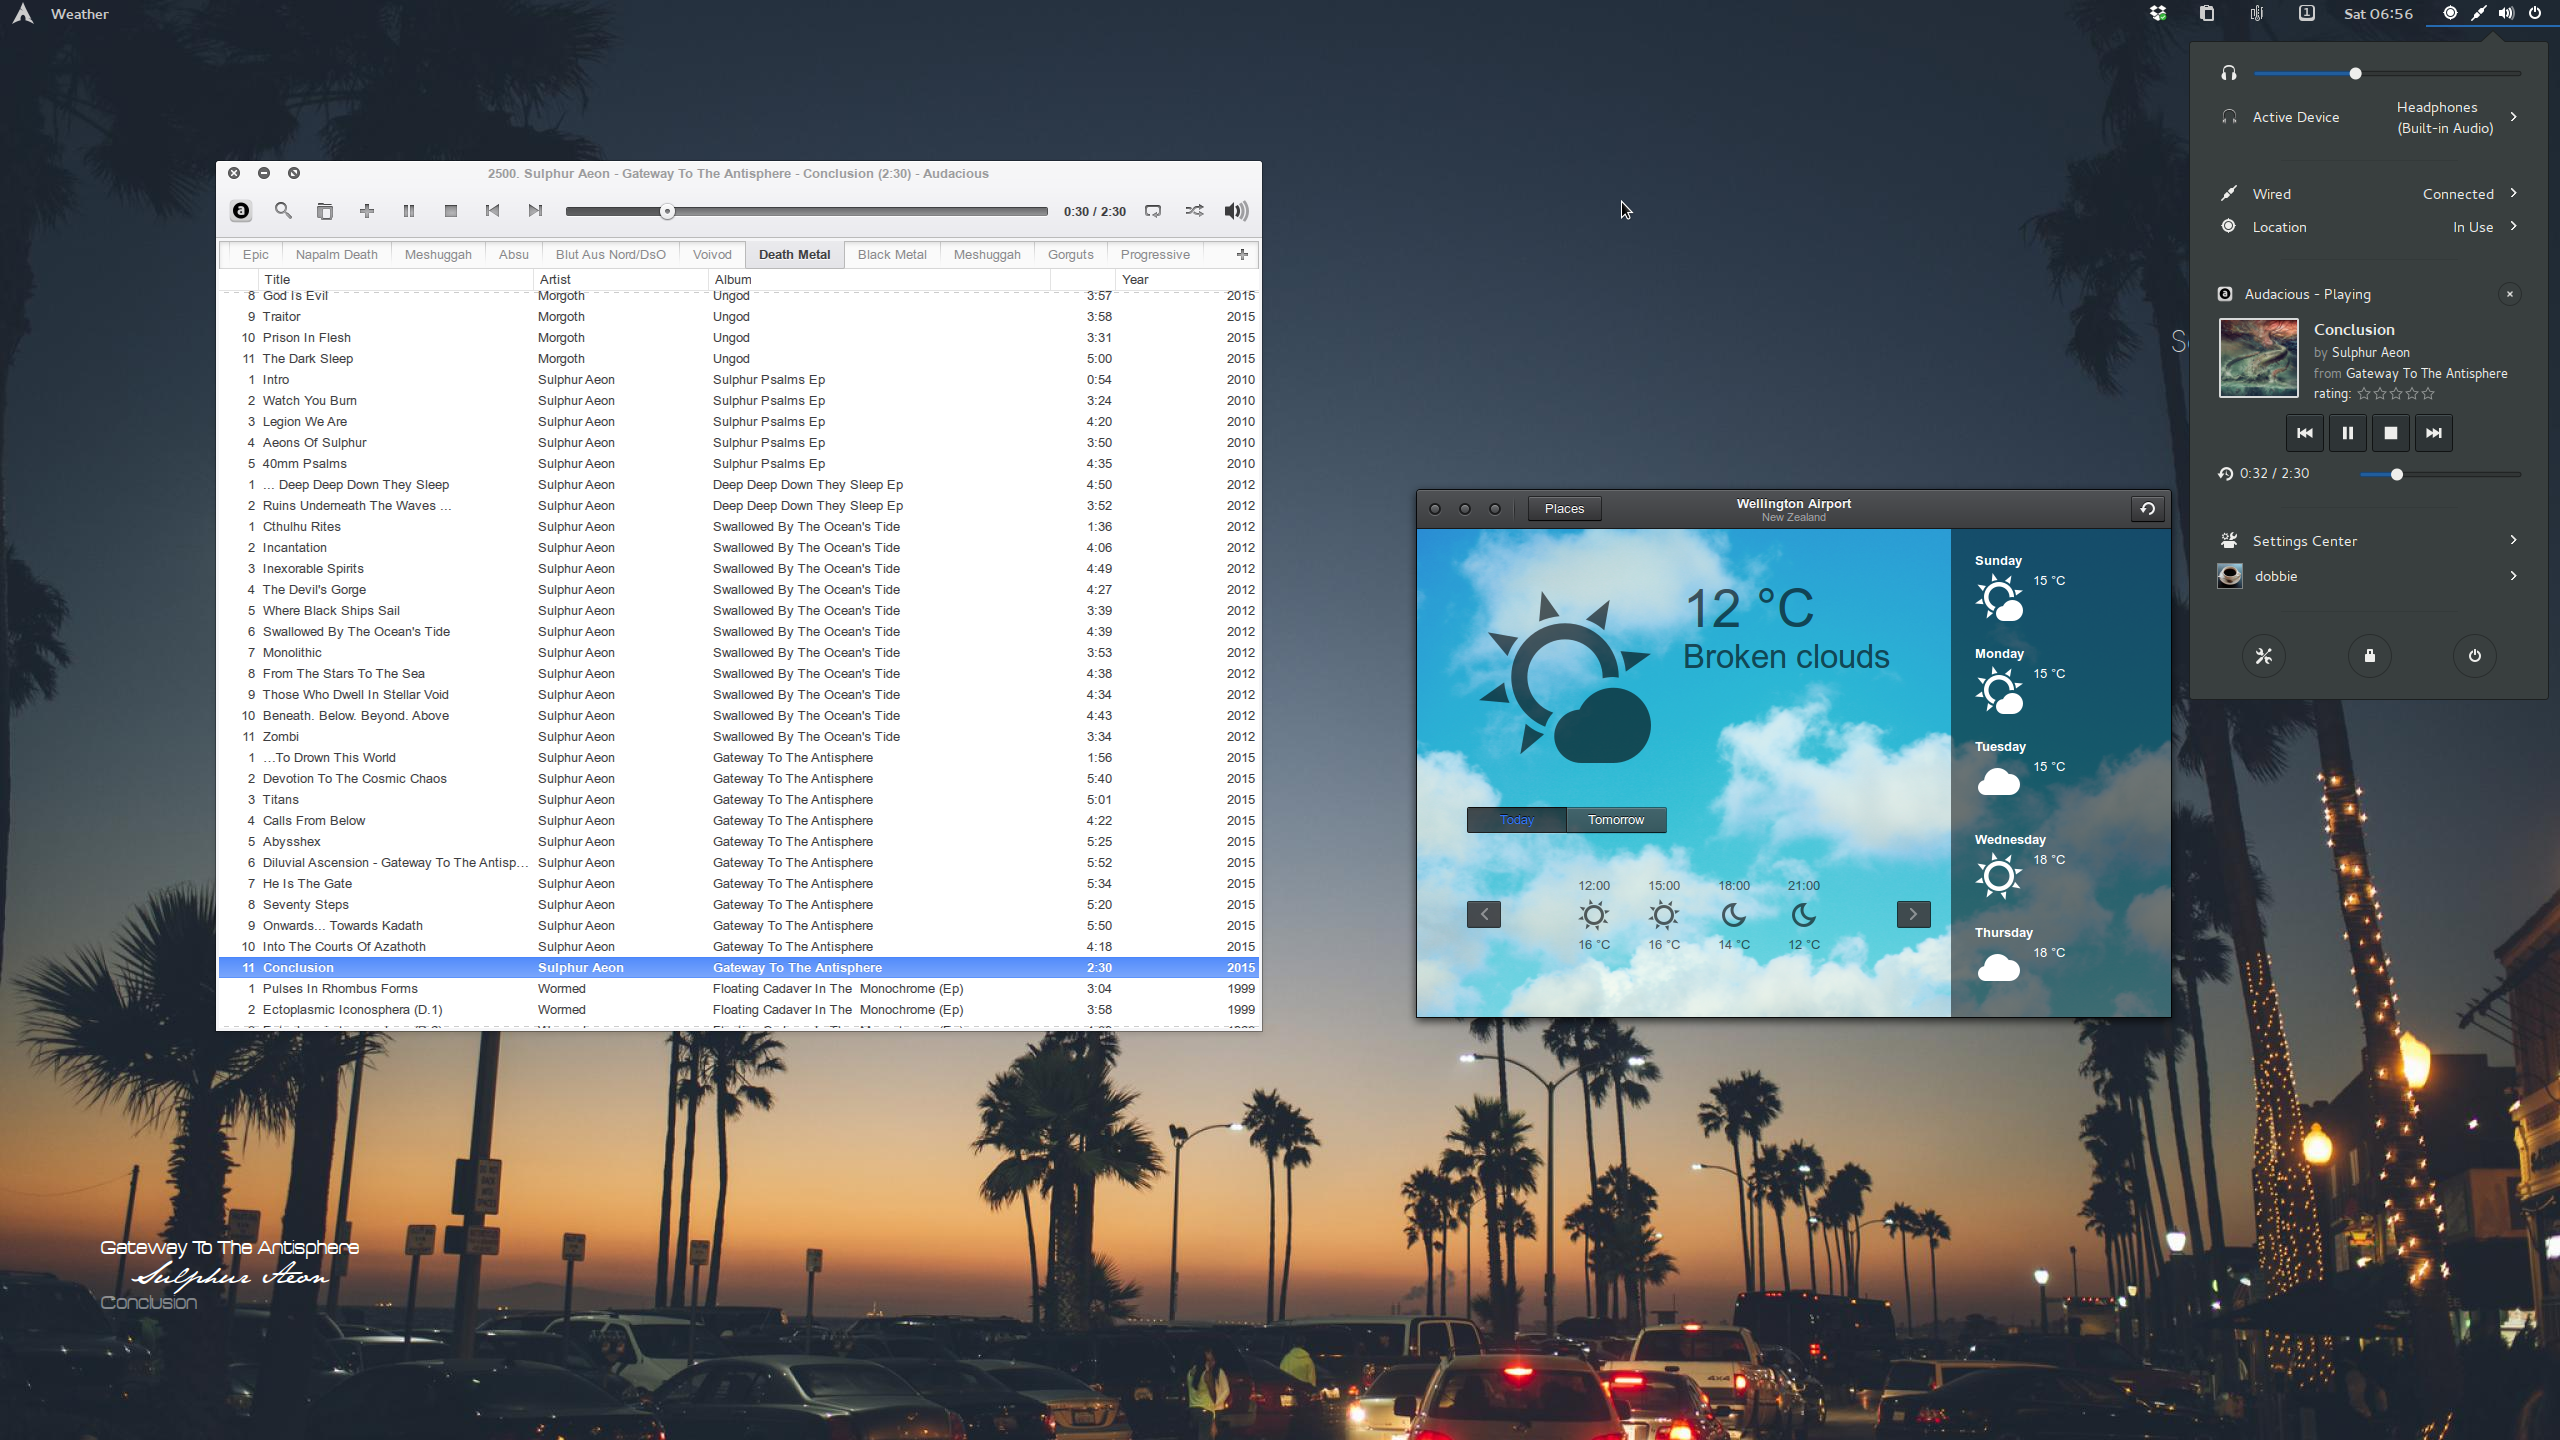 The Midsummer Night’s Desktop